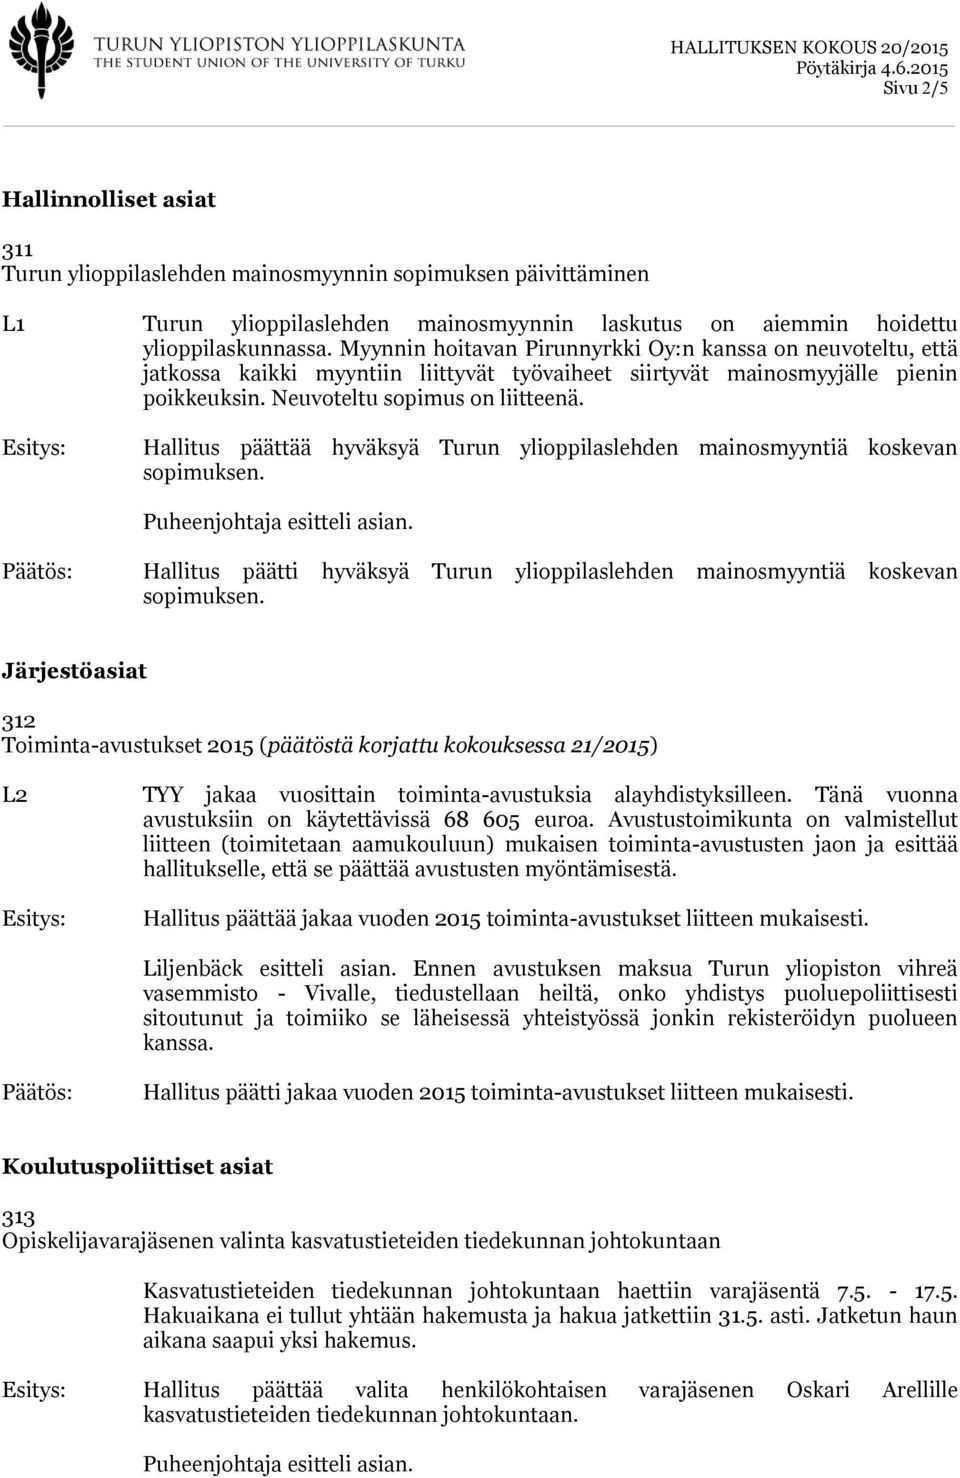 Hallitus päättää hyväksyä Turun ylioppilaslehden mainosmyyntiä koskevan sopimuksen. Hallitus päätti hyväksyä Turun ylioppilaslehden mainosmyyntiä koskevan sopimuksen.